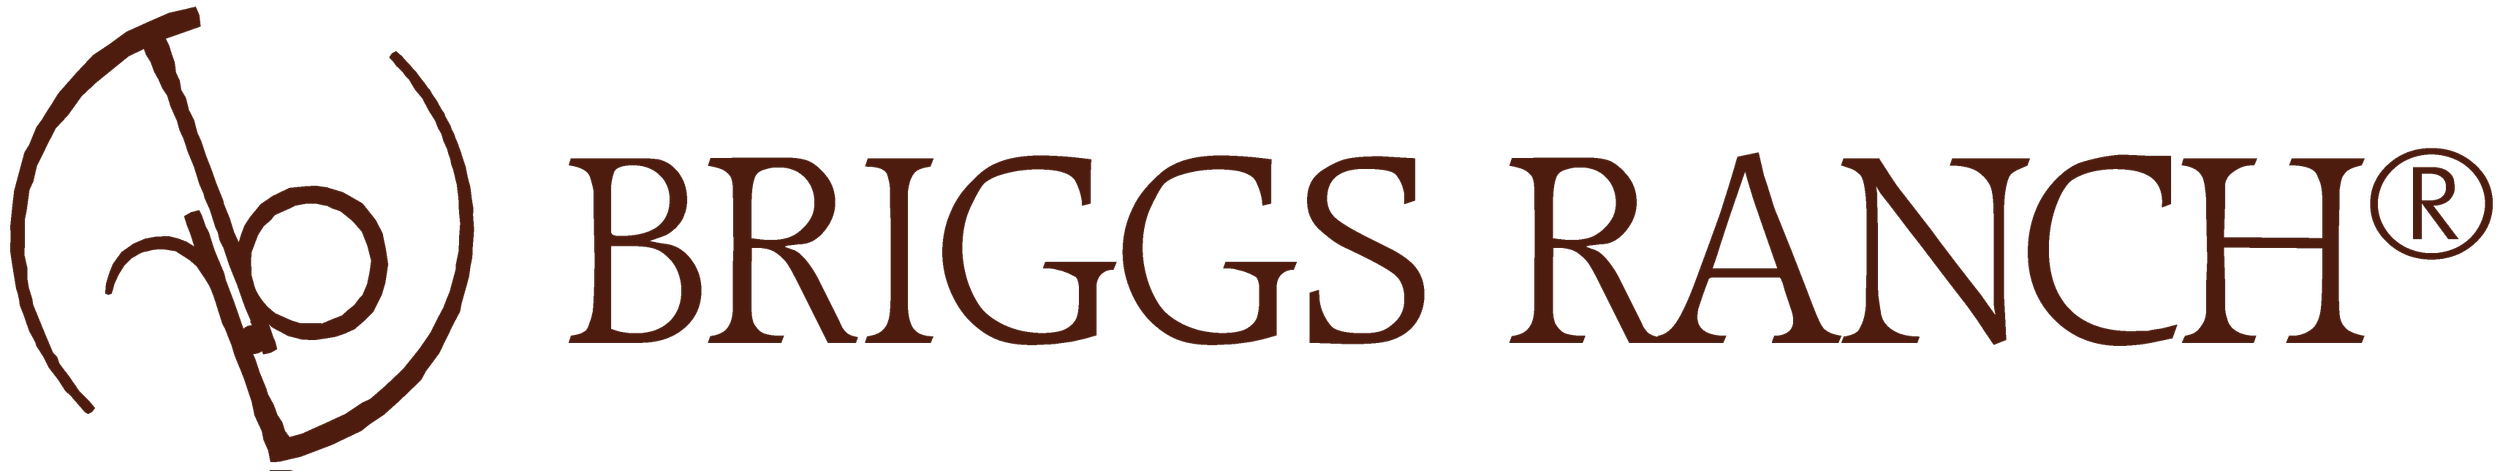 Briggs Ranch Logo